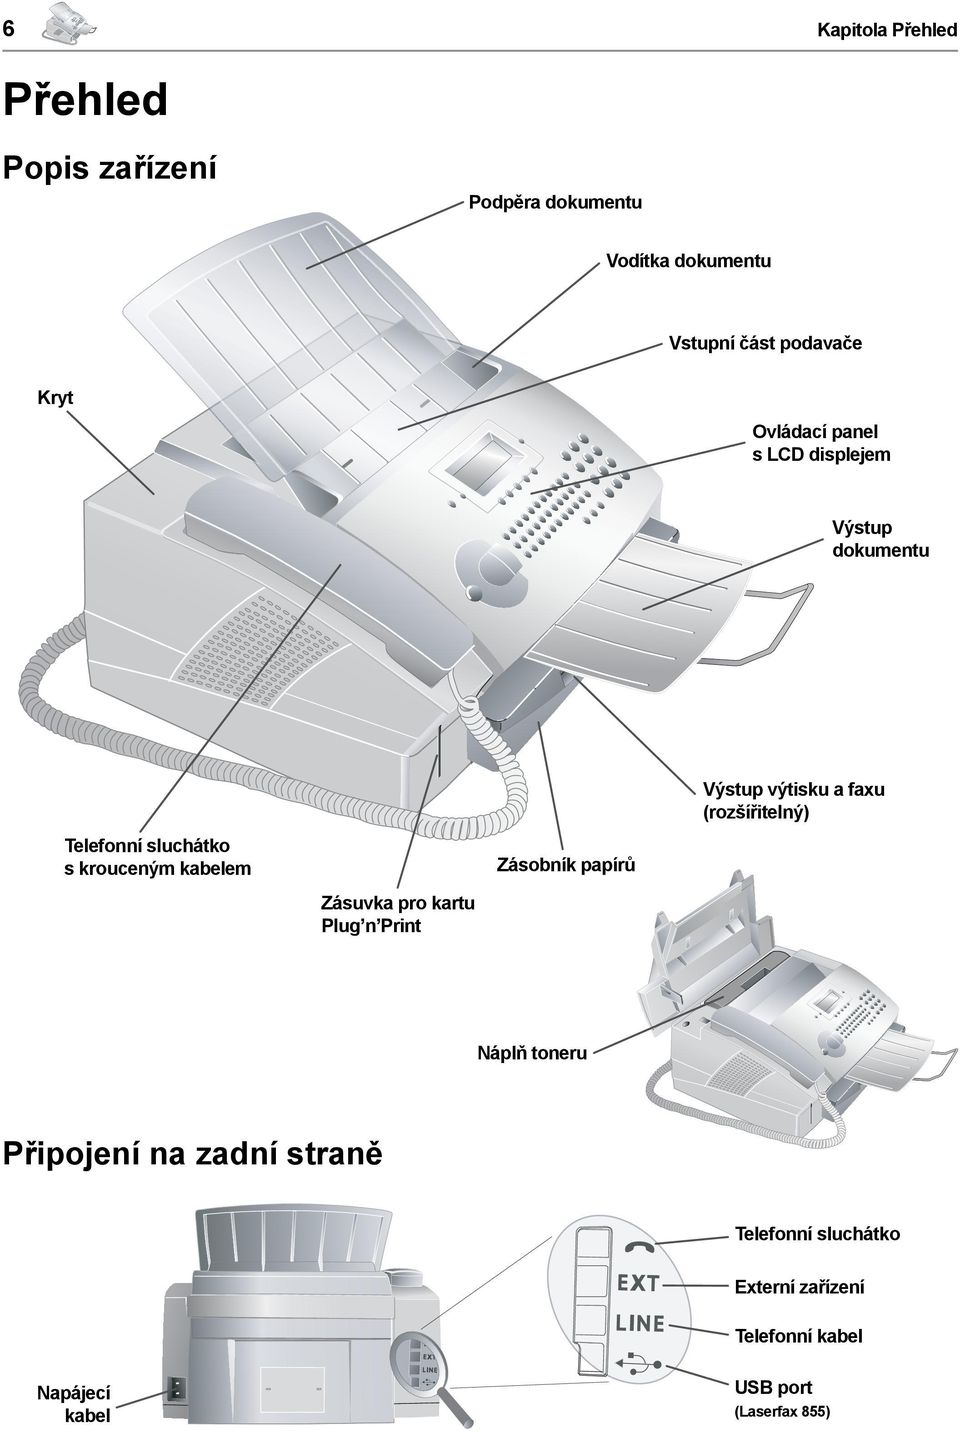 pro kartu Plug n Print Zásobník papírů Výstup výtisku a faxu (rozšířitelný) Náplň toneru Připojení na